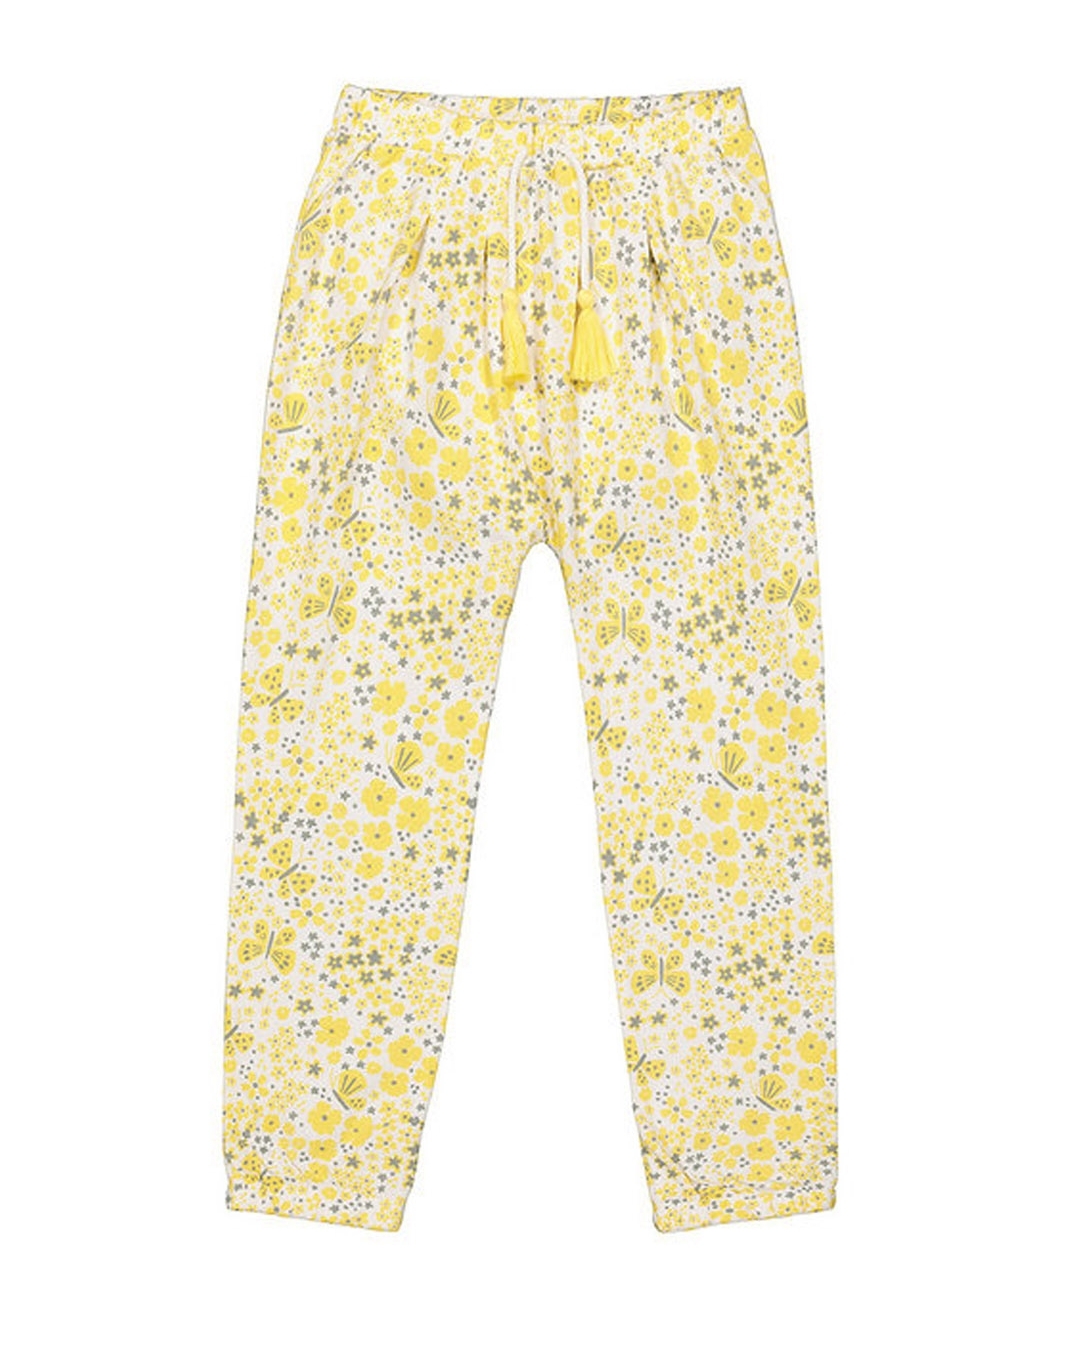 Printed Micro Fleece Straight Pajama Pants for Girls | Old Navy